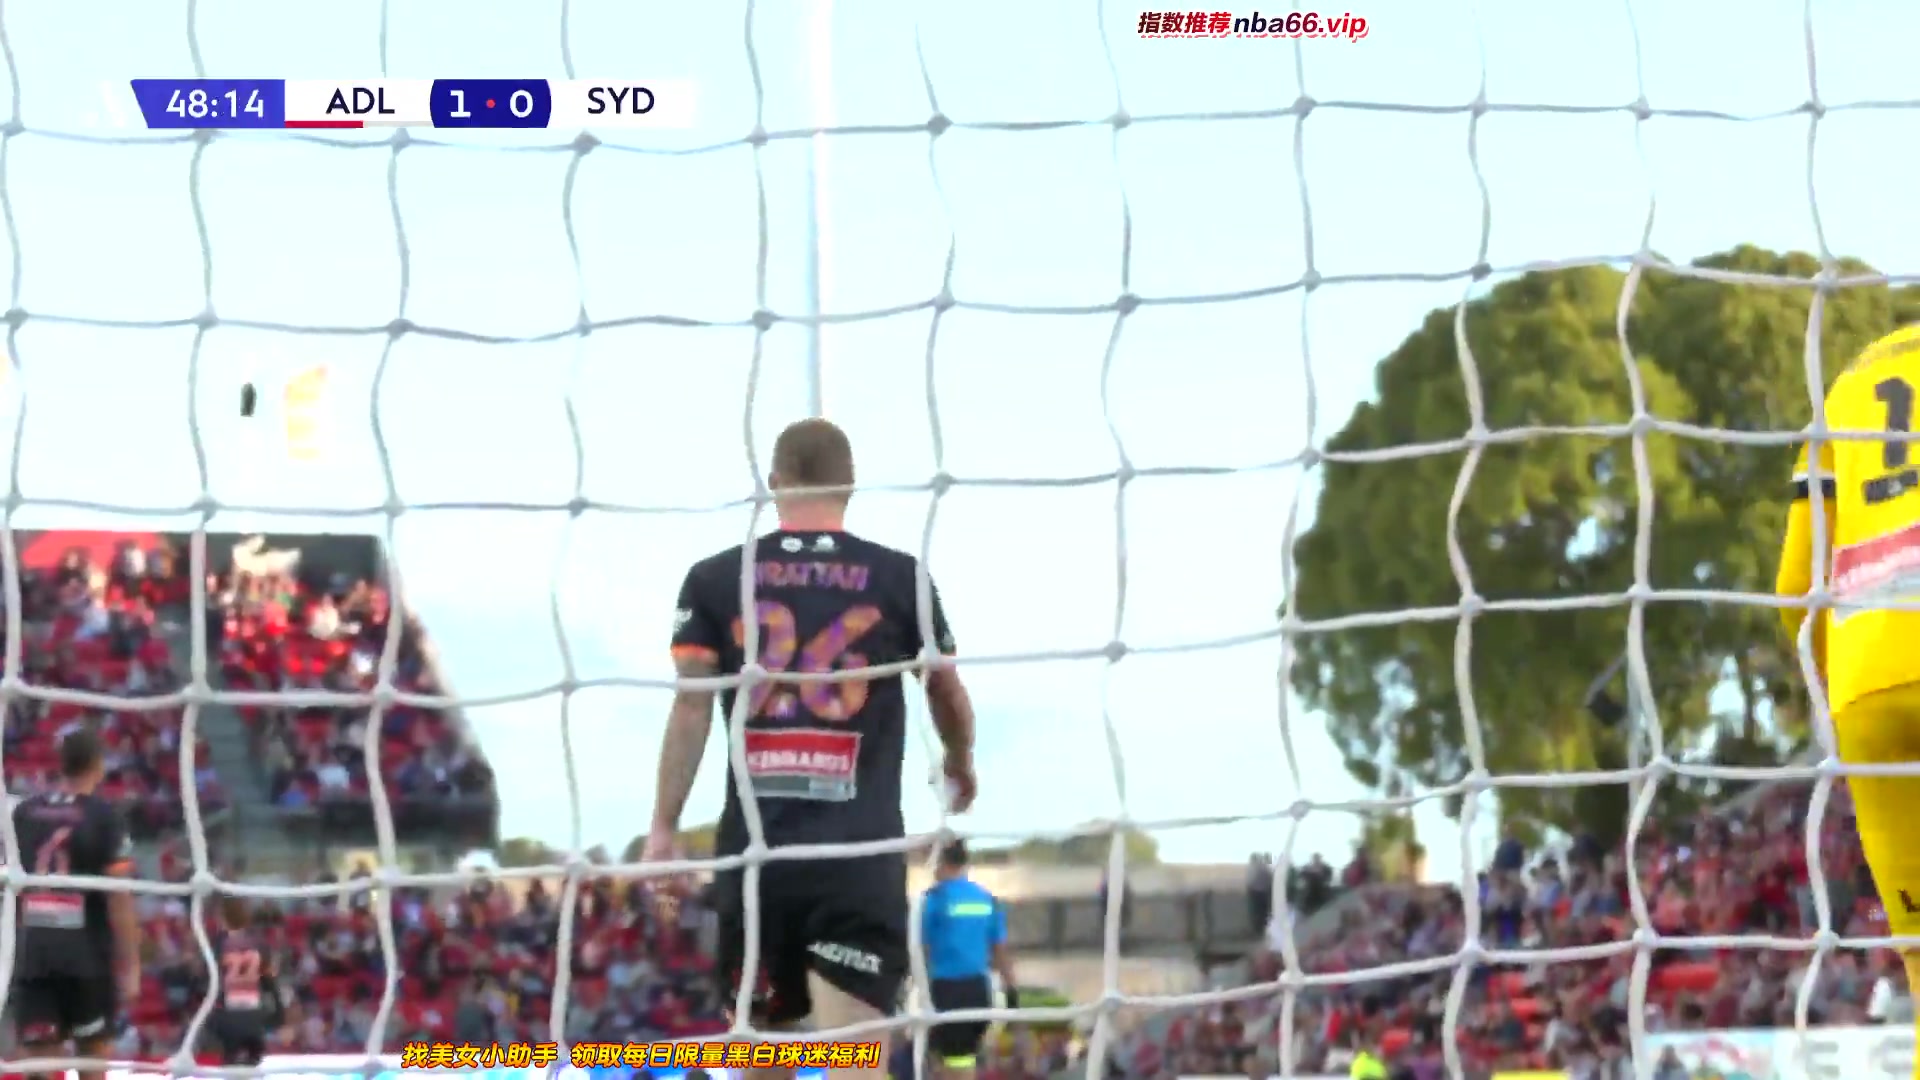 AUS D1 Adelaide United Vs Sydney FC  Goal in 49 min, Score 1:0